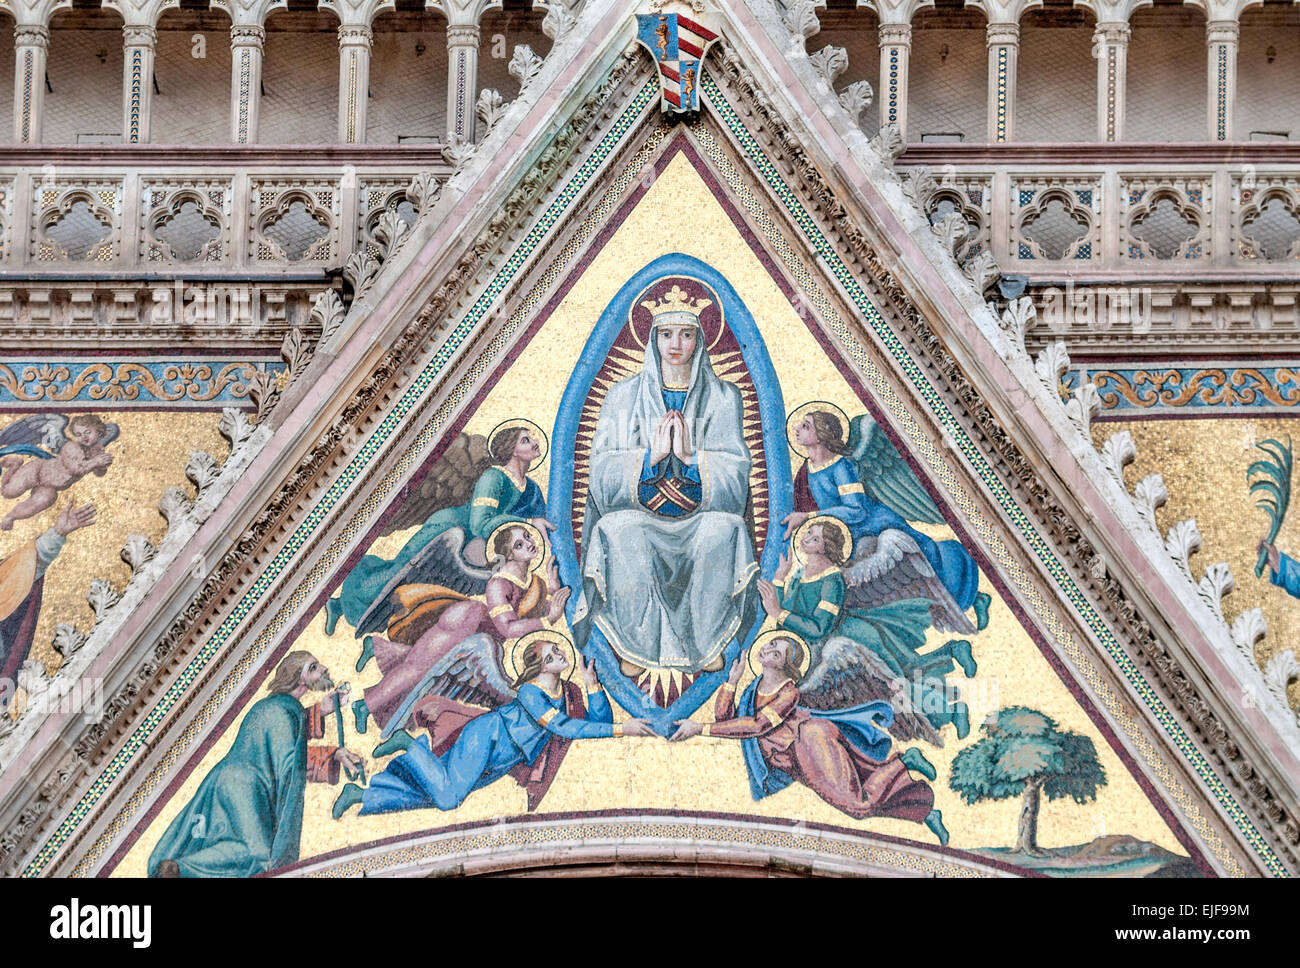 Détails architecturaux à la cathédrale d'Orvieto (Duomo di Orvieto), Ombrie, Italie Banque D'Images